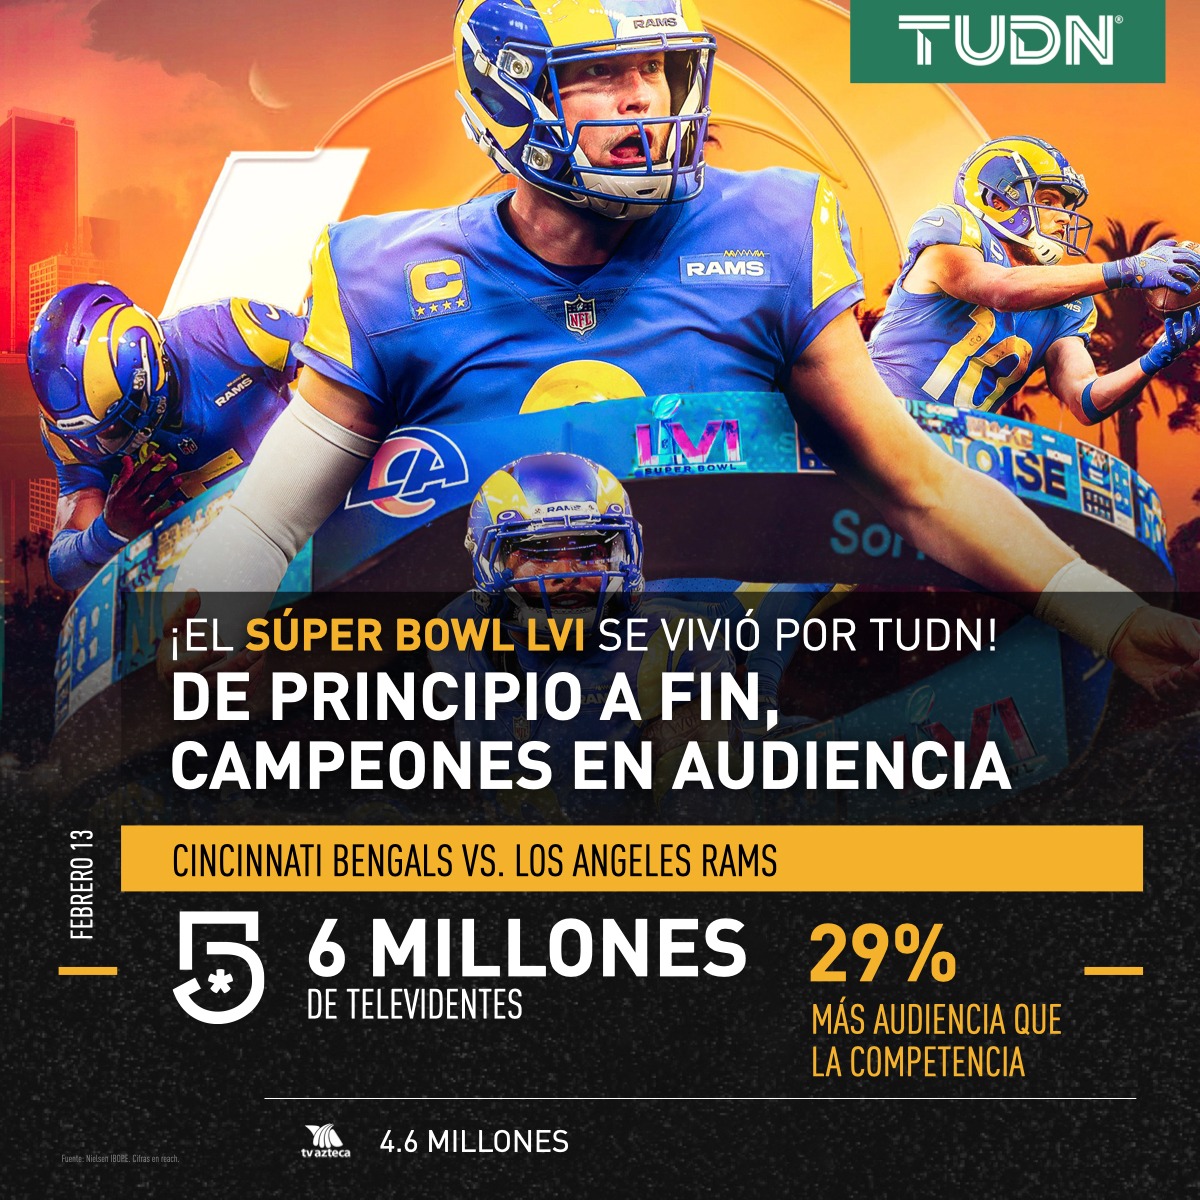 TUDN noquea a Azteca Deportes en el Super Bowl. Foto: Twitter